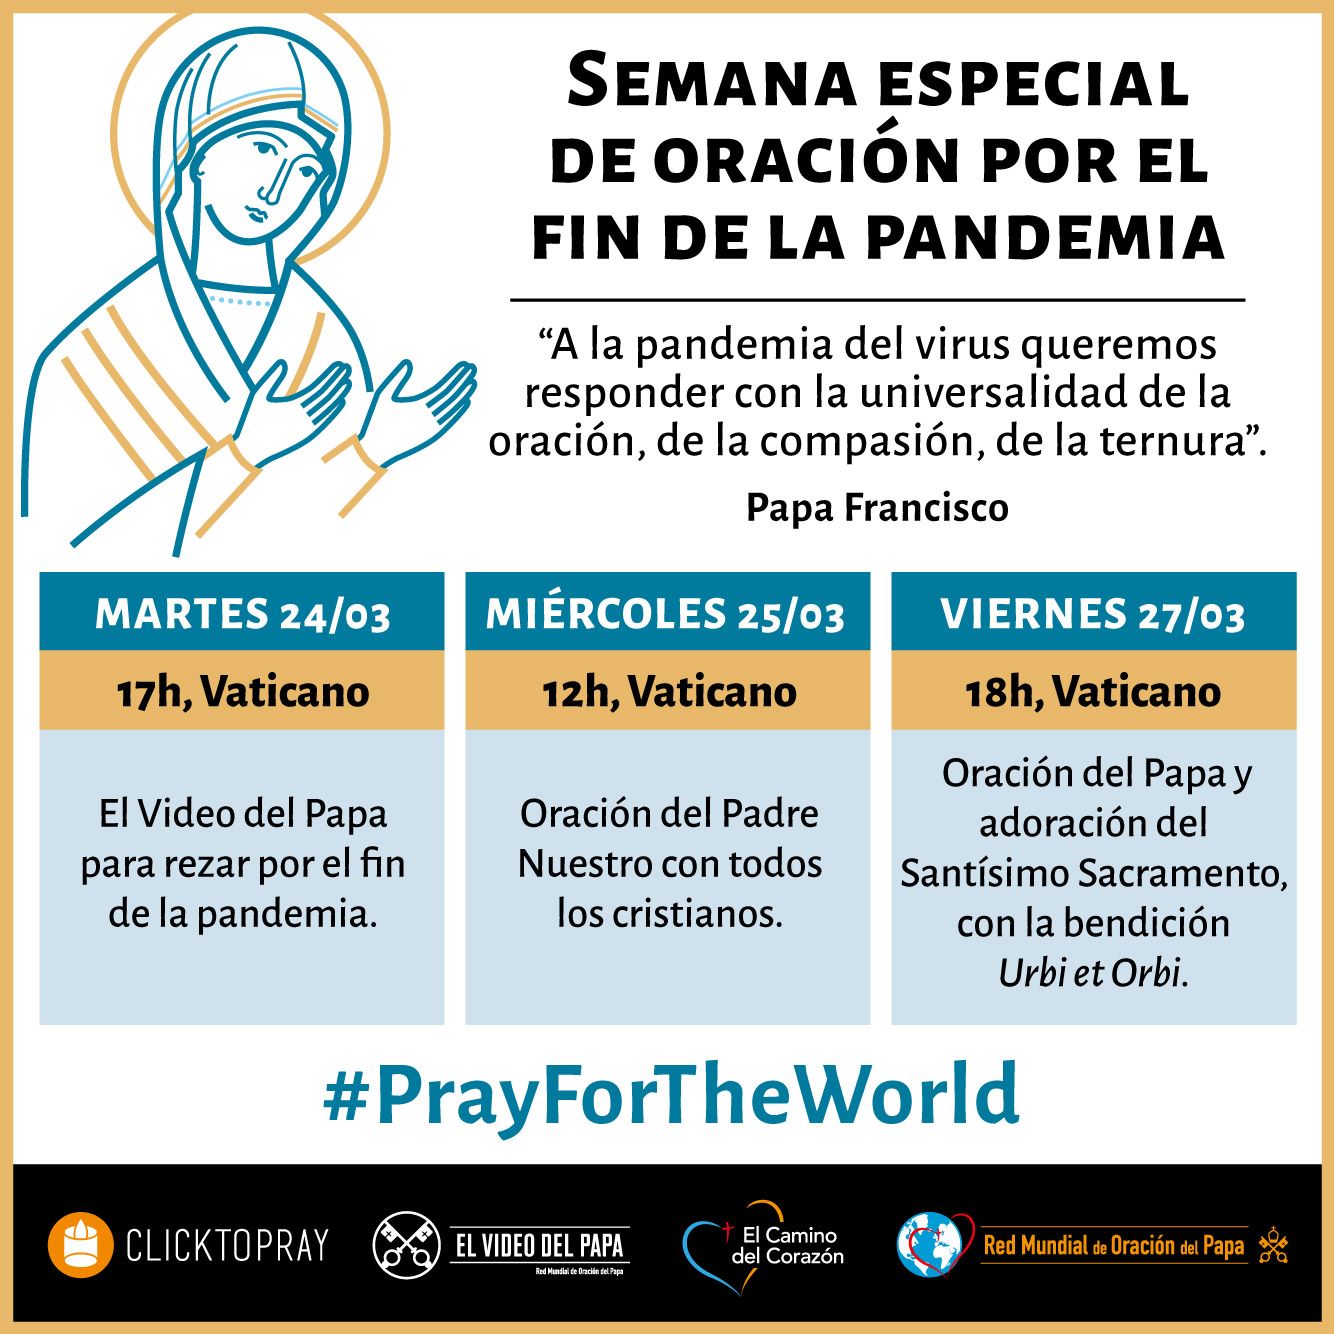 Semana especial de oración por el fin de la pandemia, hoy día 24